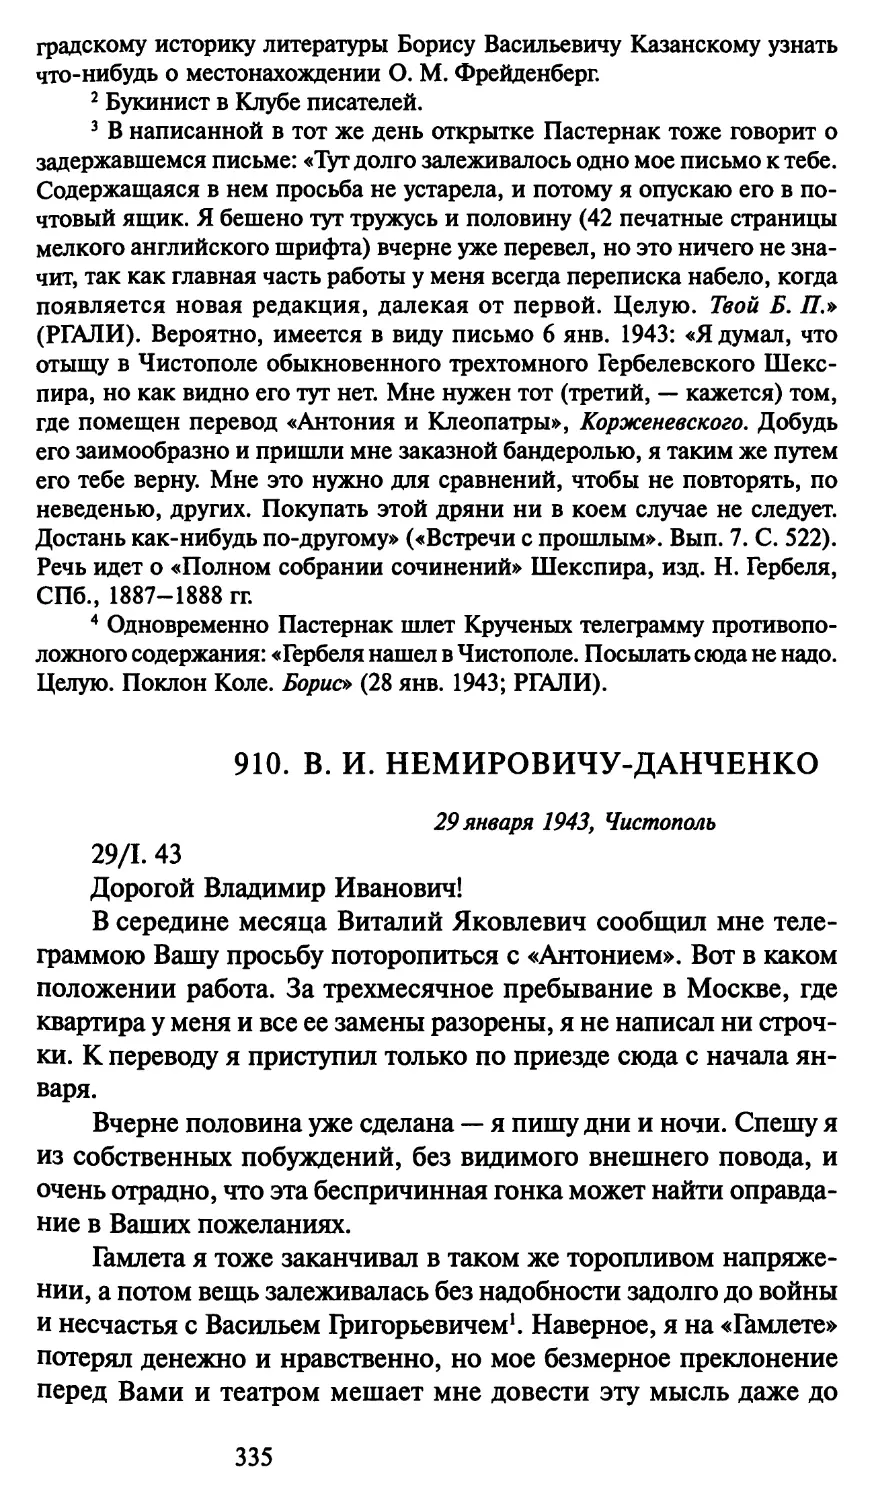 910. В. И. Немировичу-Данченко 29 января 1943